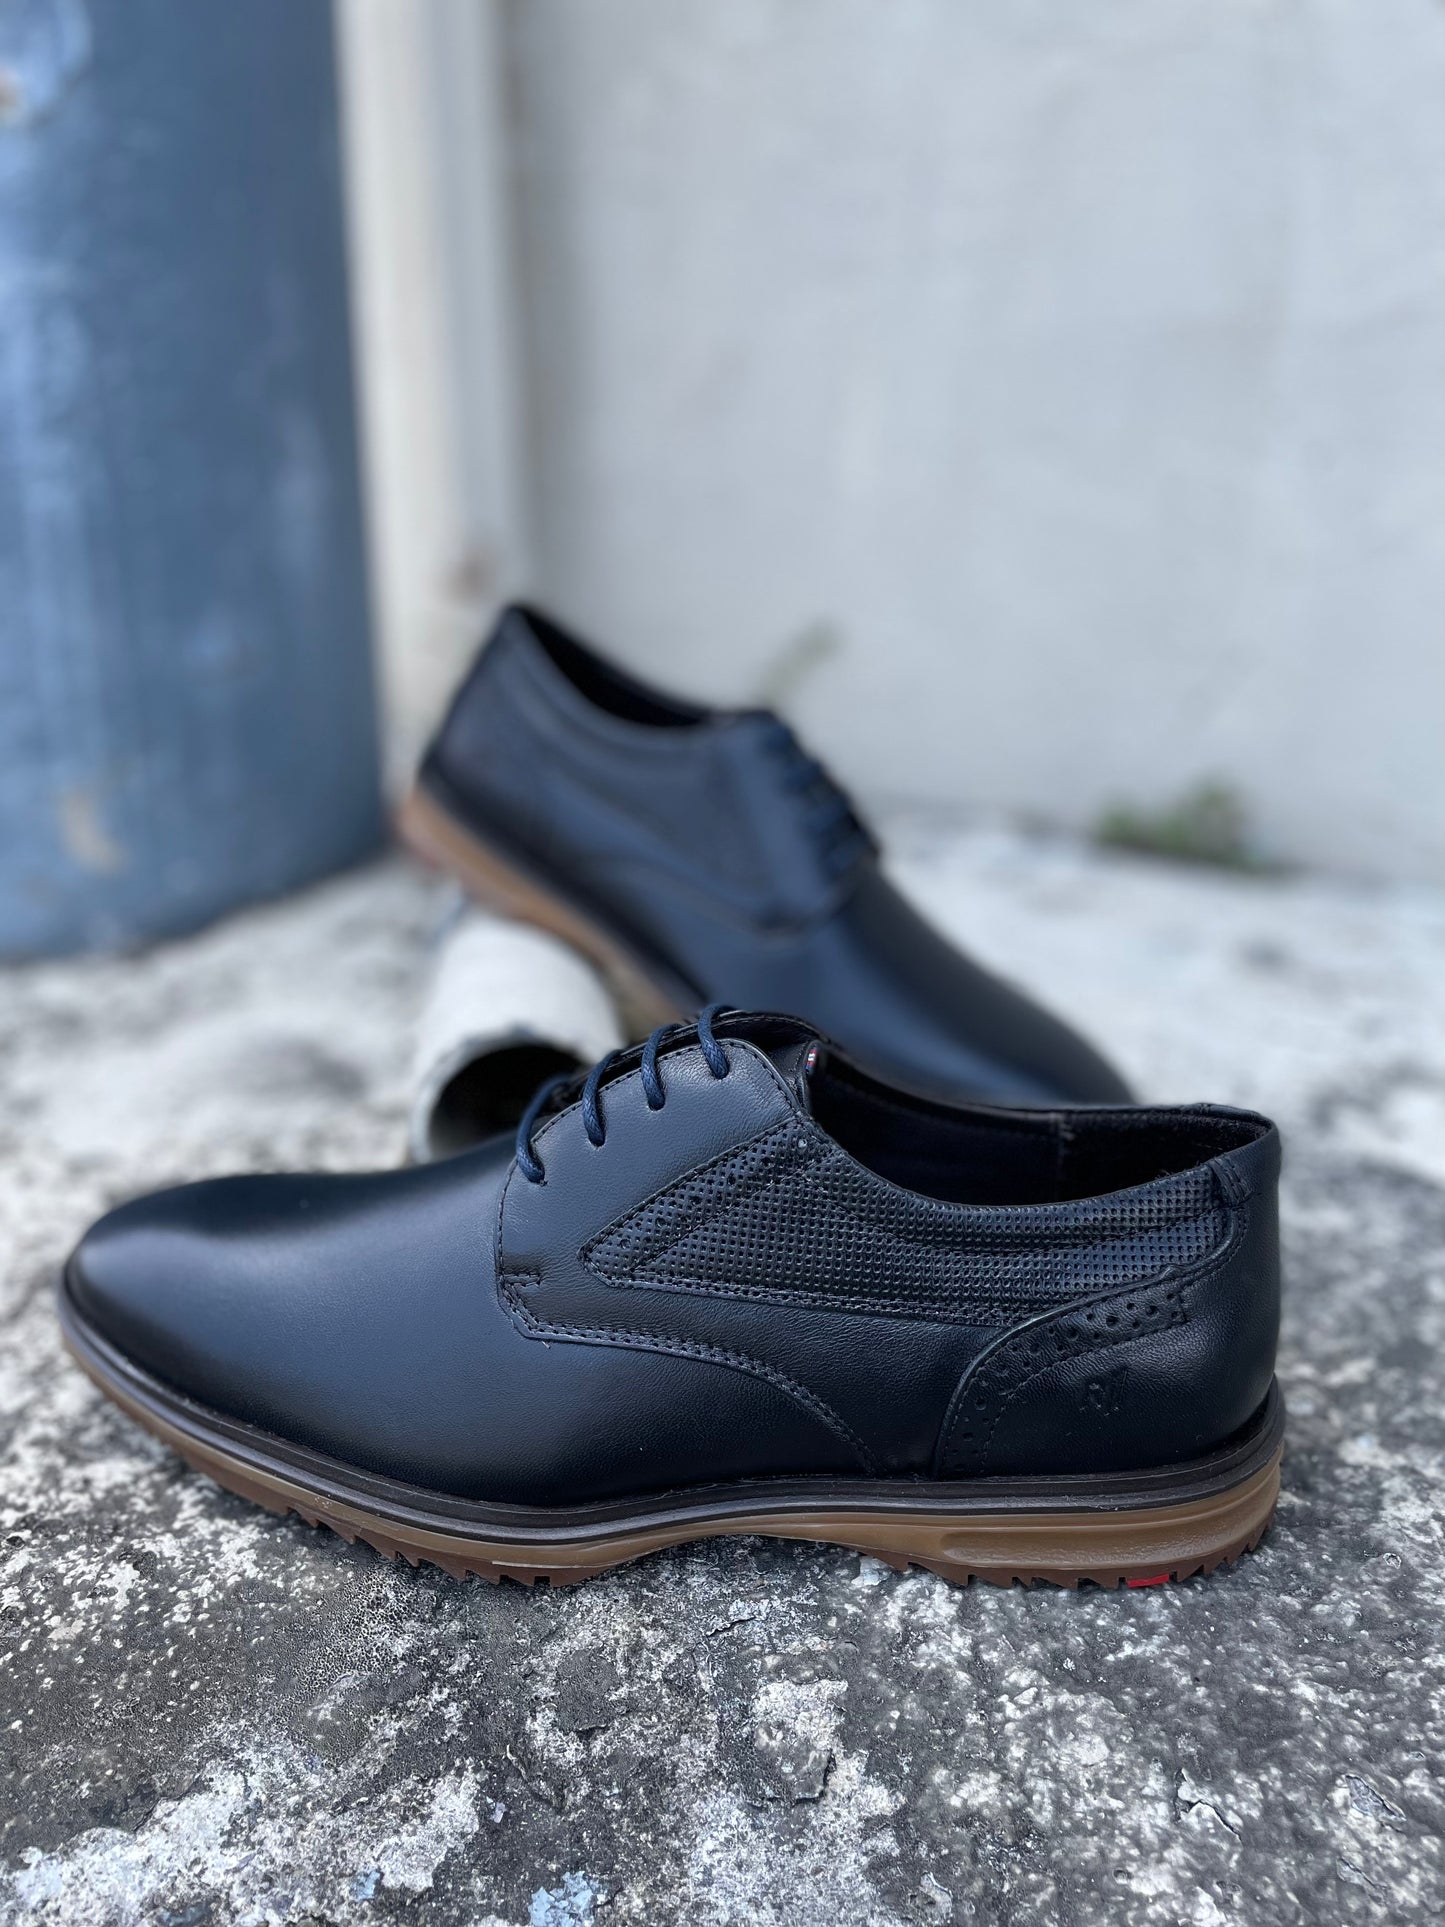 Classy Men Dress Shoe 67001- Final Sale